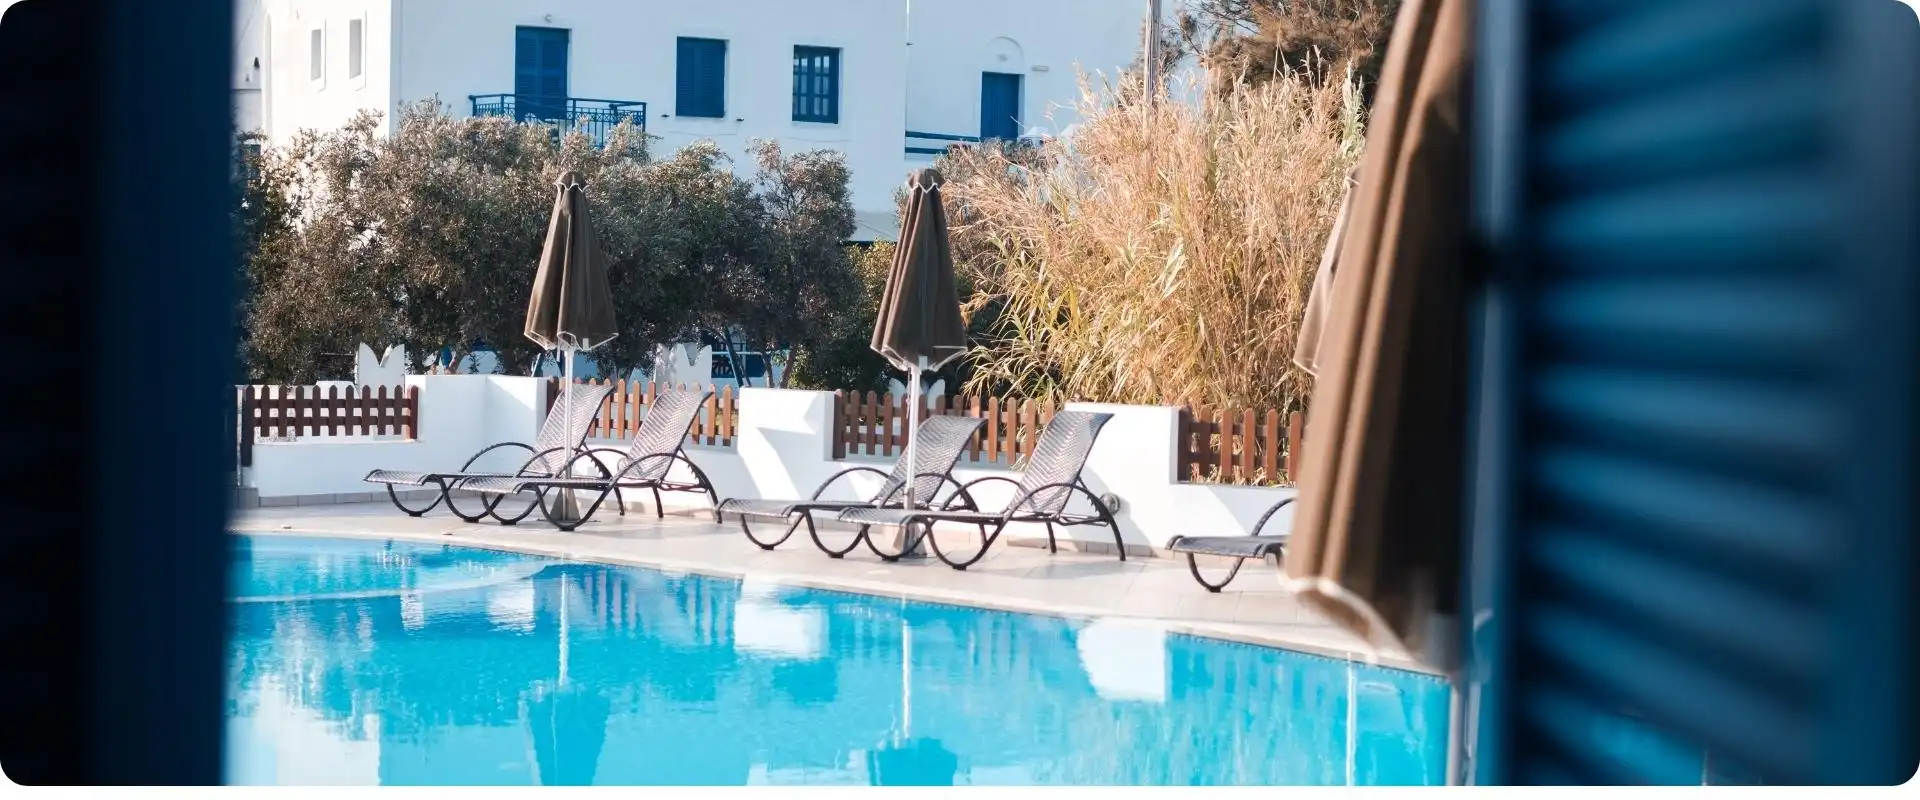 Naxos hotel charterrejser til grækenland flyv fra hamborg.webp